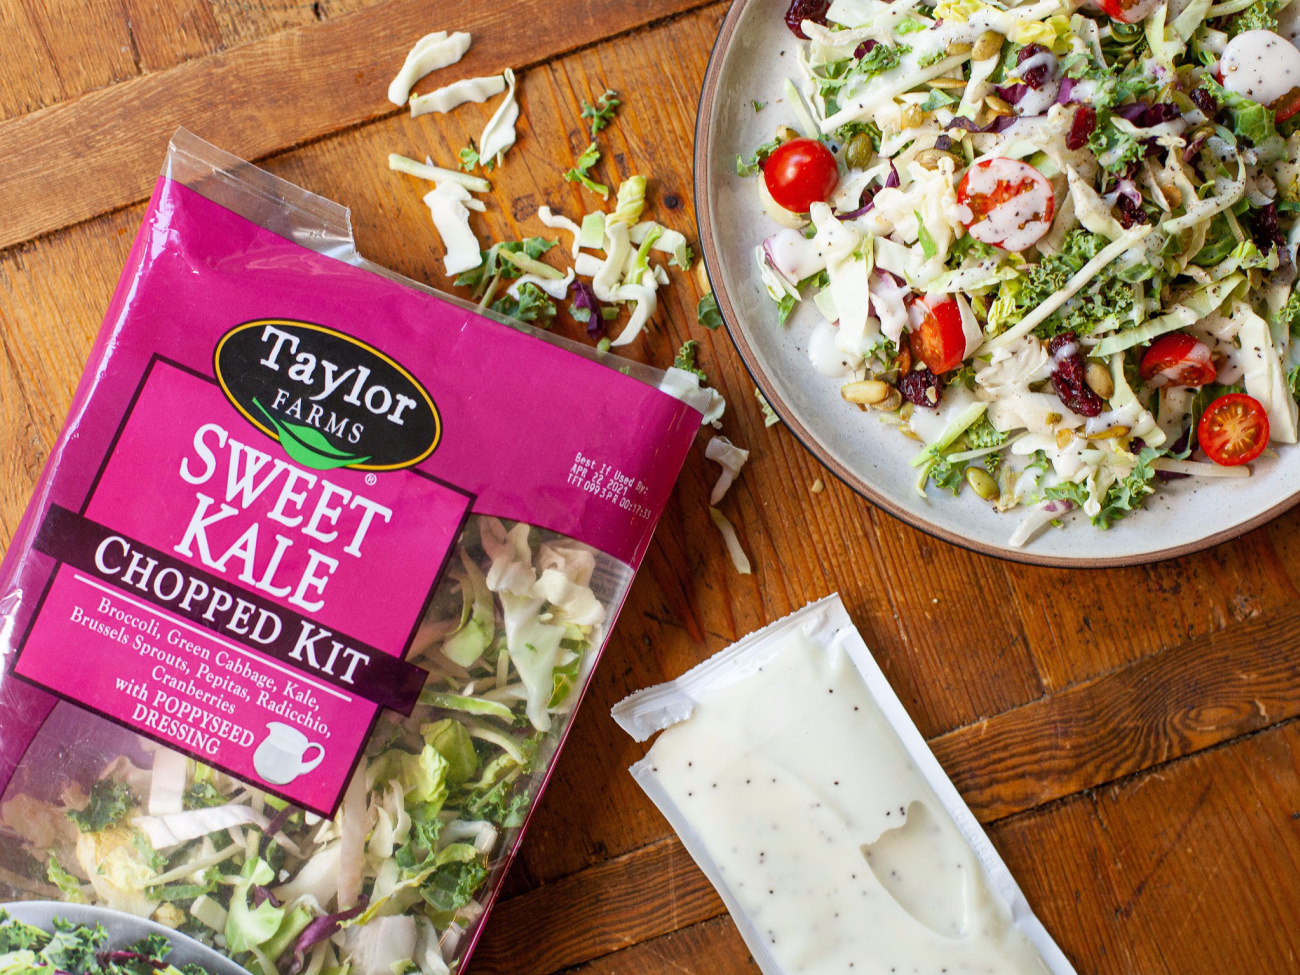 Grab Taylor Farms Chopped Salad Kits For Just $2.25 At Publix